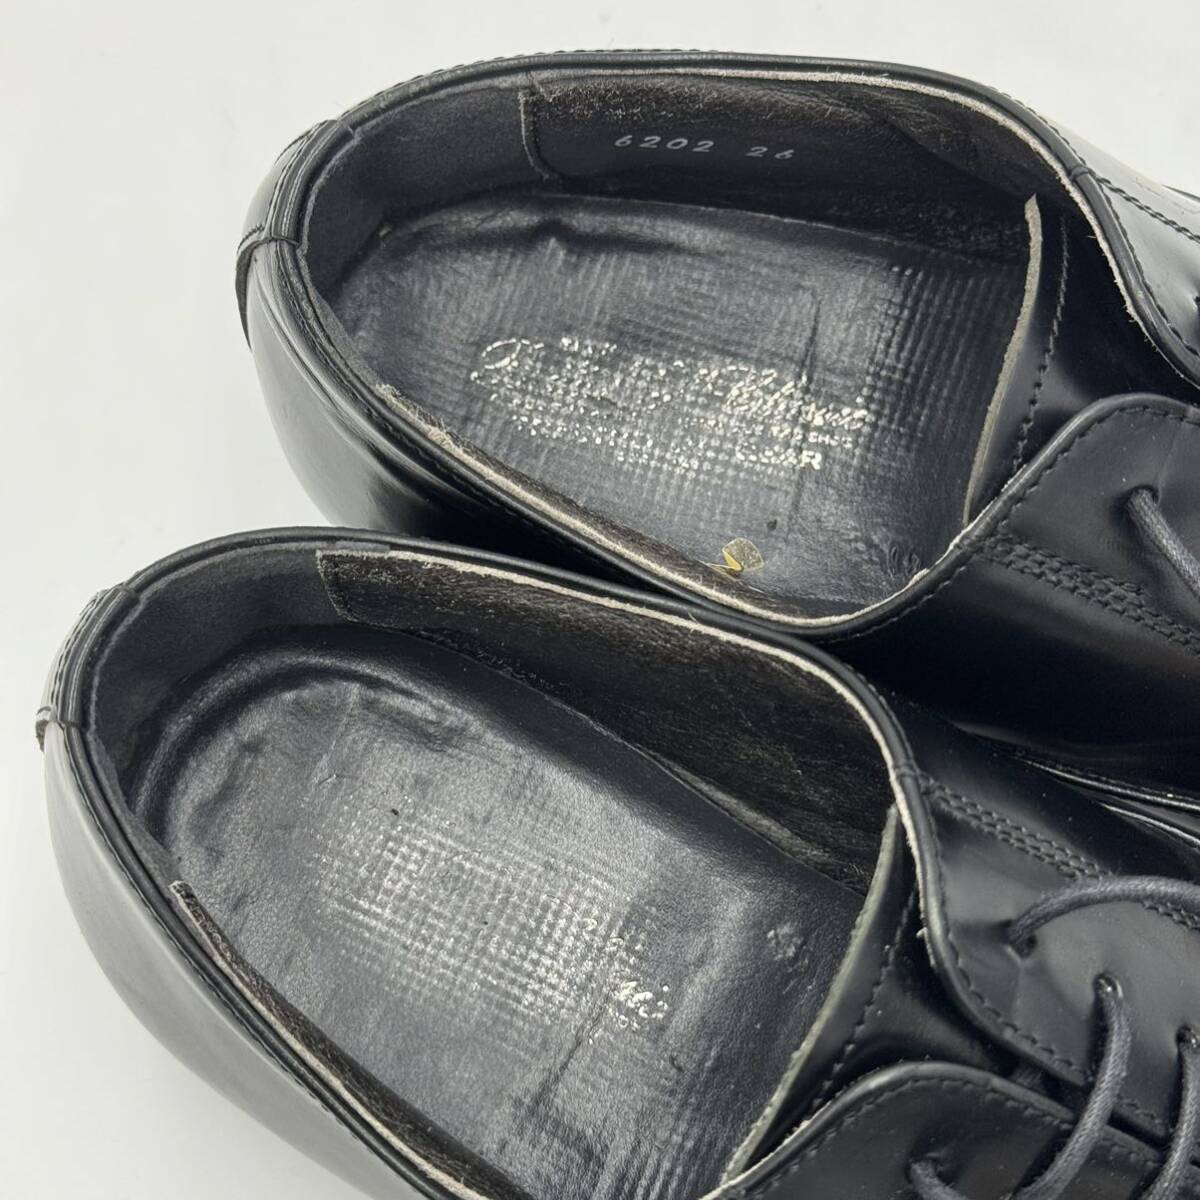 G ☆ 人気モデル!! '日本製' ブランド不明 レザー ビジネスシューズ 革靴 ストレートチップ 内羽根式 size:26.0cm EEE メンズ 紳士靴 BLKの画像8